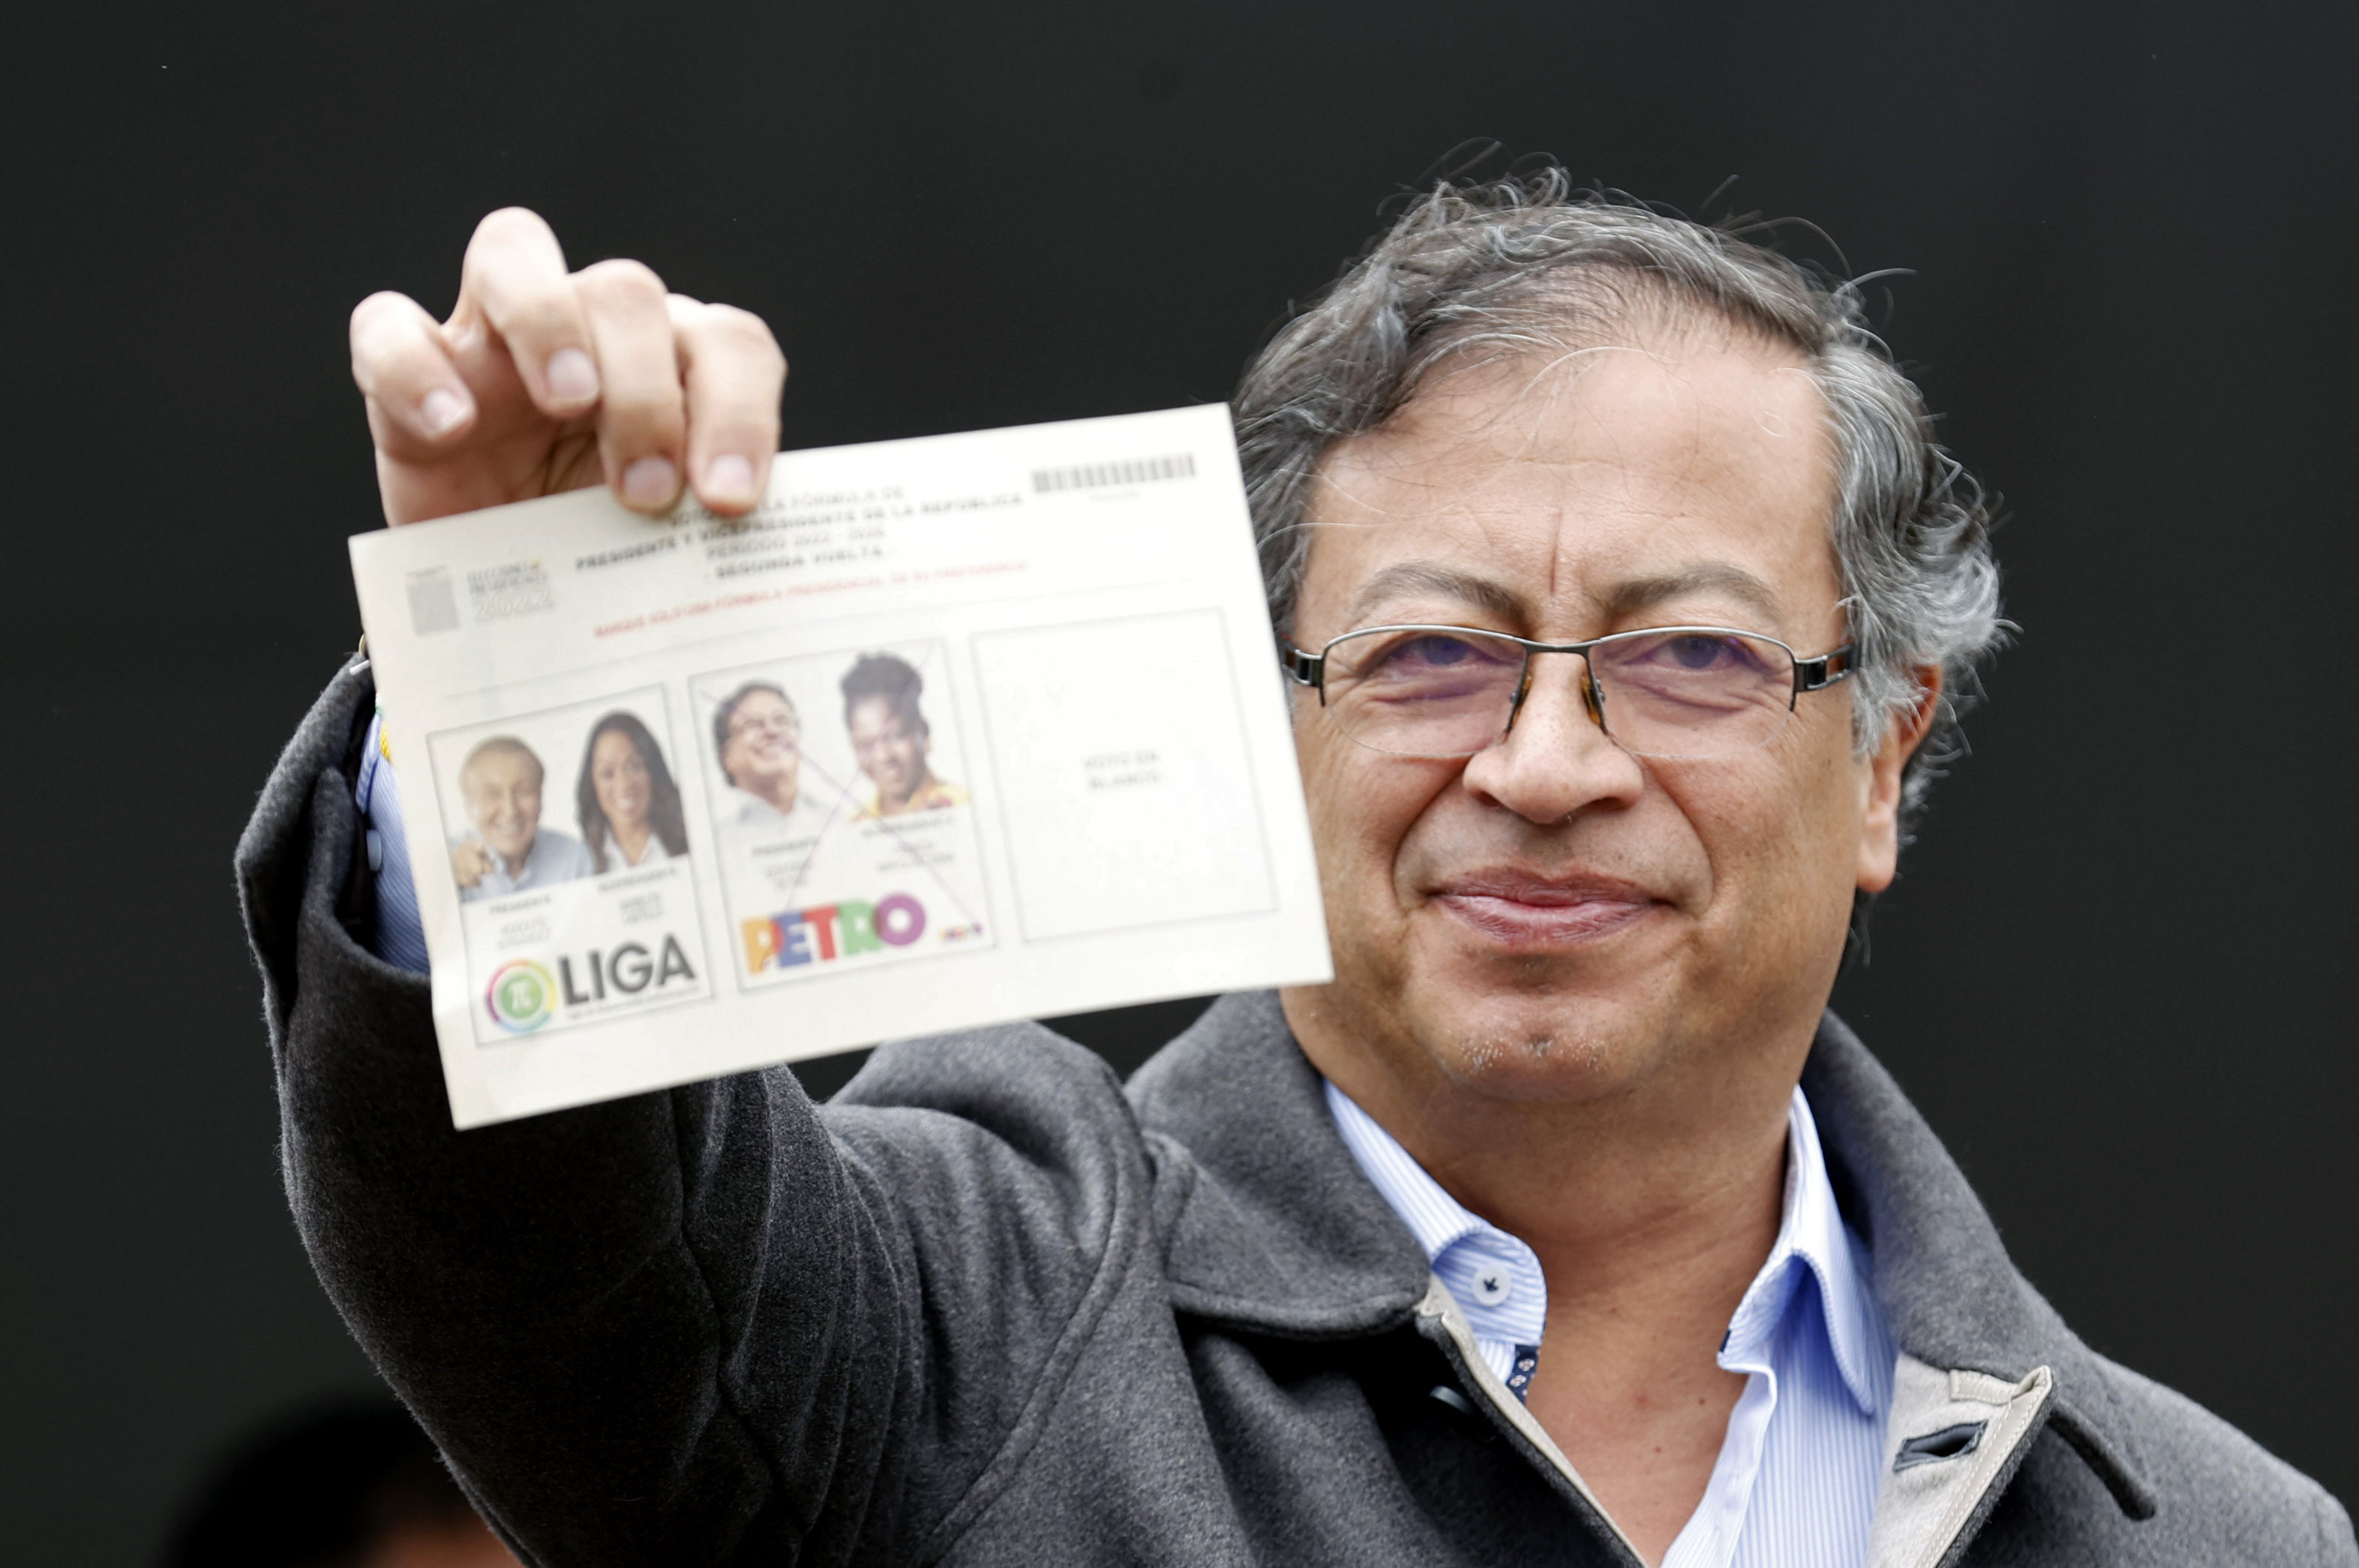 Petro tras ganar la Presidencia de Colombia: Hoy es día de fiesta para el pueblo